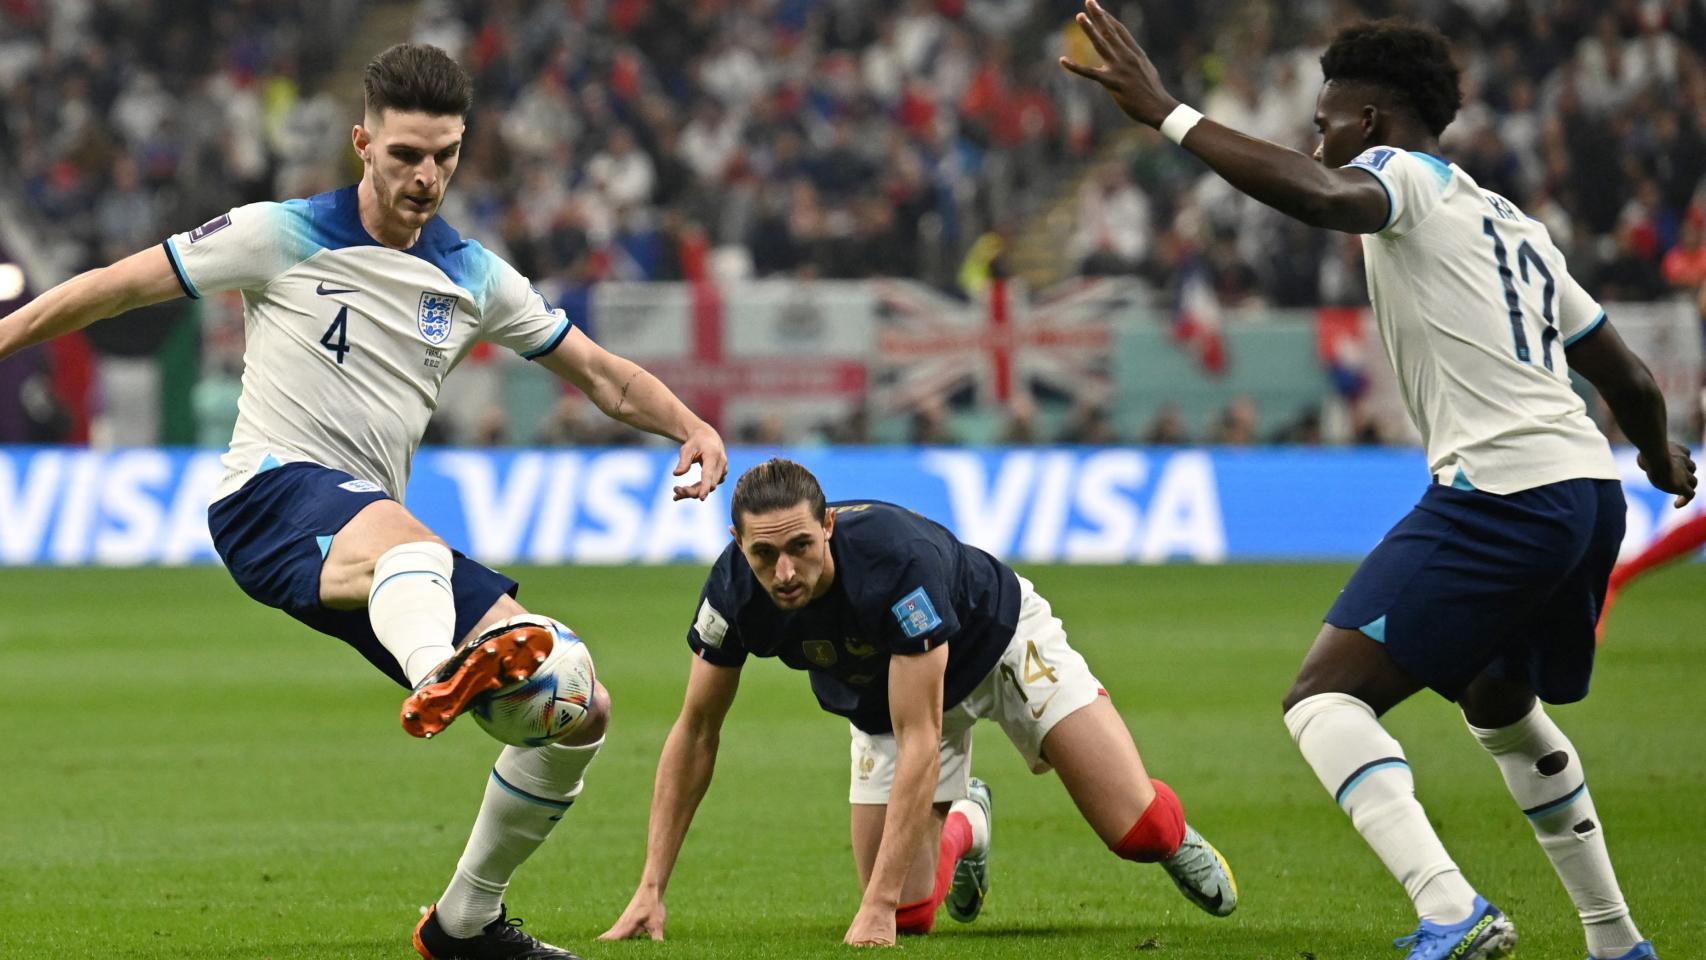 Inglaterra 1 - 2 Francia, Mundial de Qatar | Resultado, narración y goleadores del partido